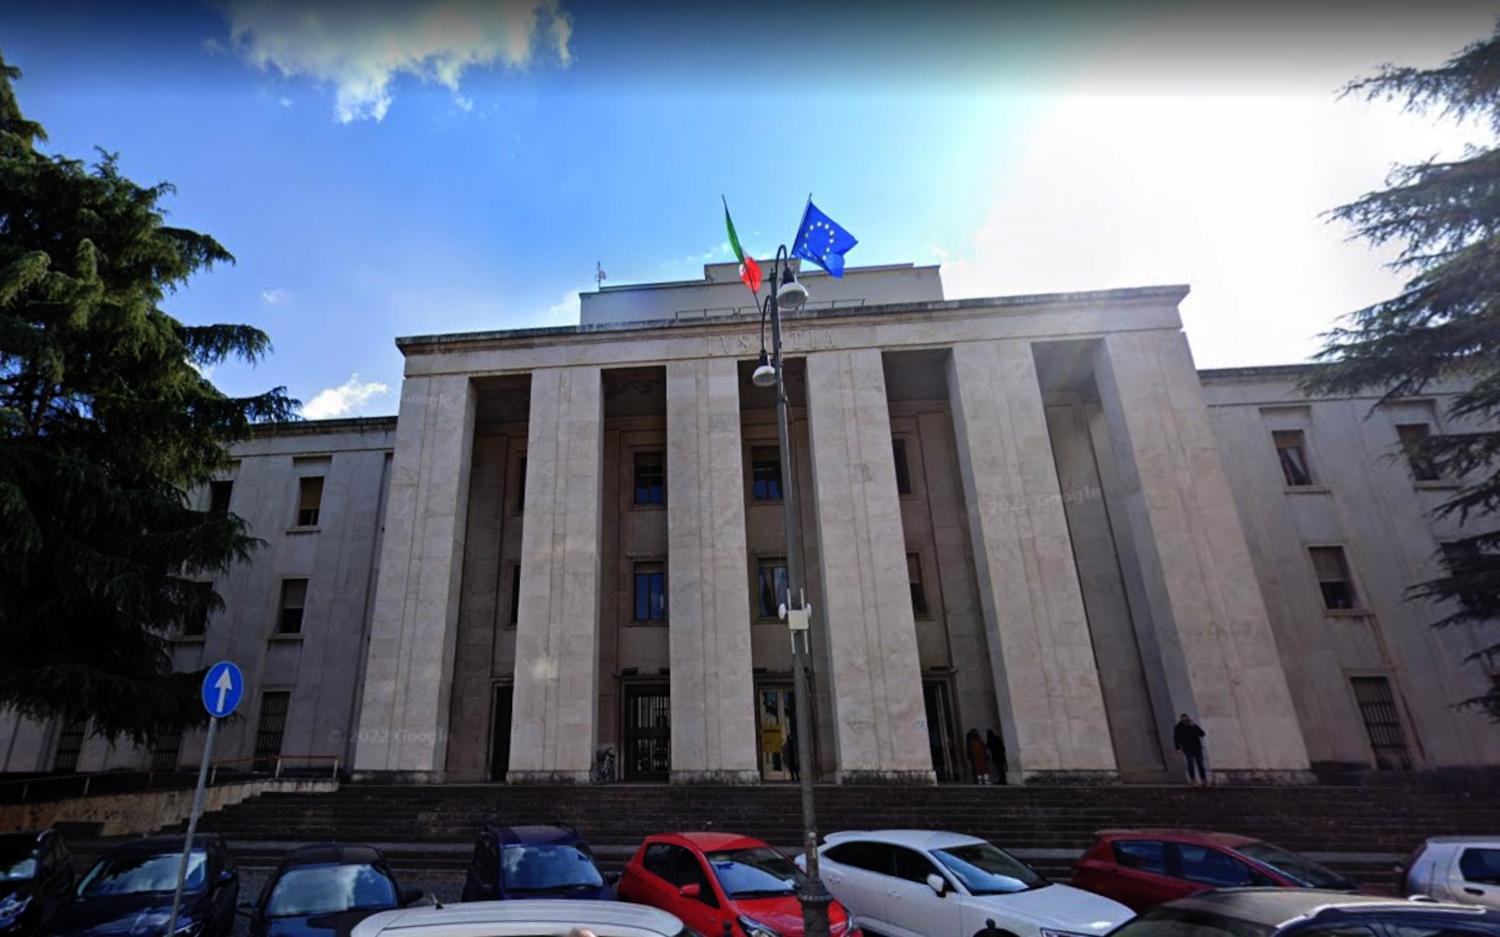 L'avv. Paolo Travaglini, presidente dell'Ordine degli Avvocati esprime la sua preoccupazione per il futuro del Tribunale di Ascoli Piceno